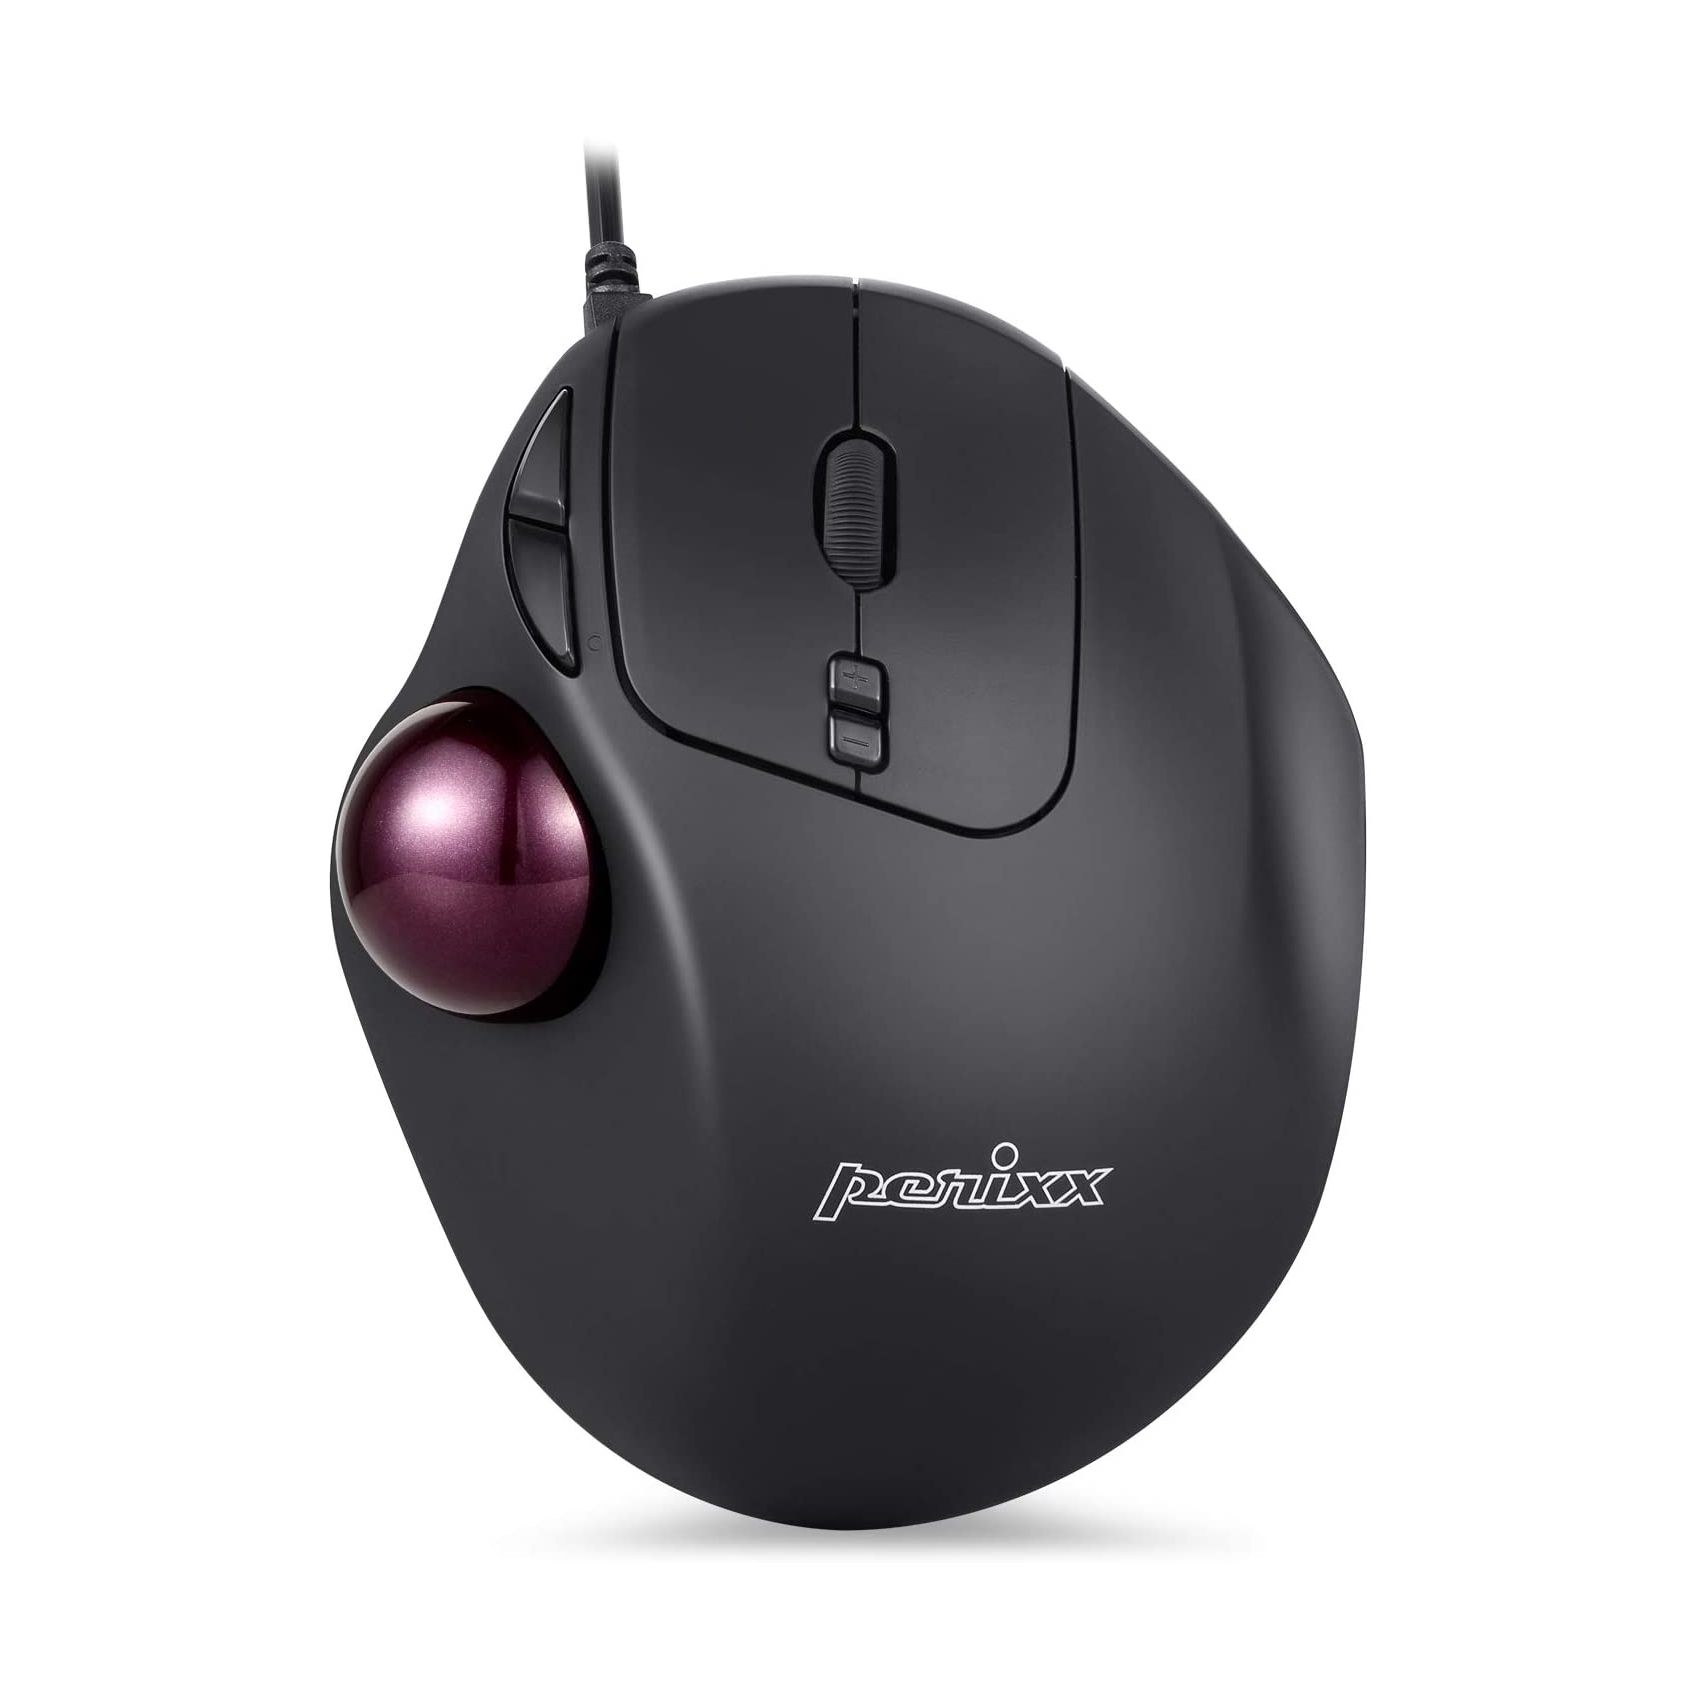 best trackball mouse for zbrush